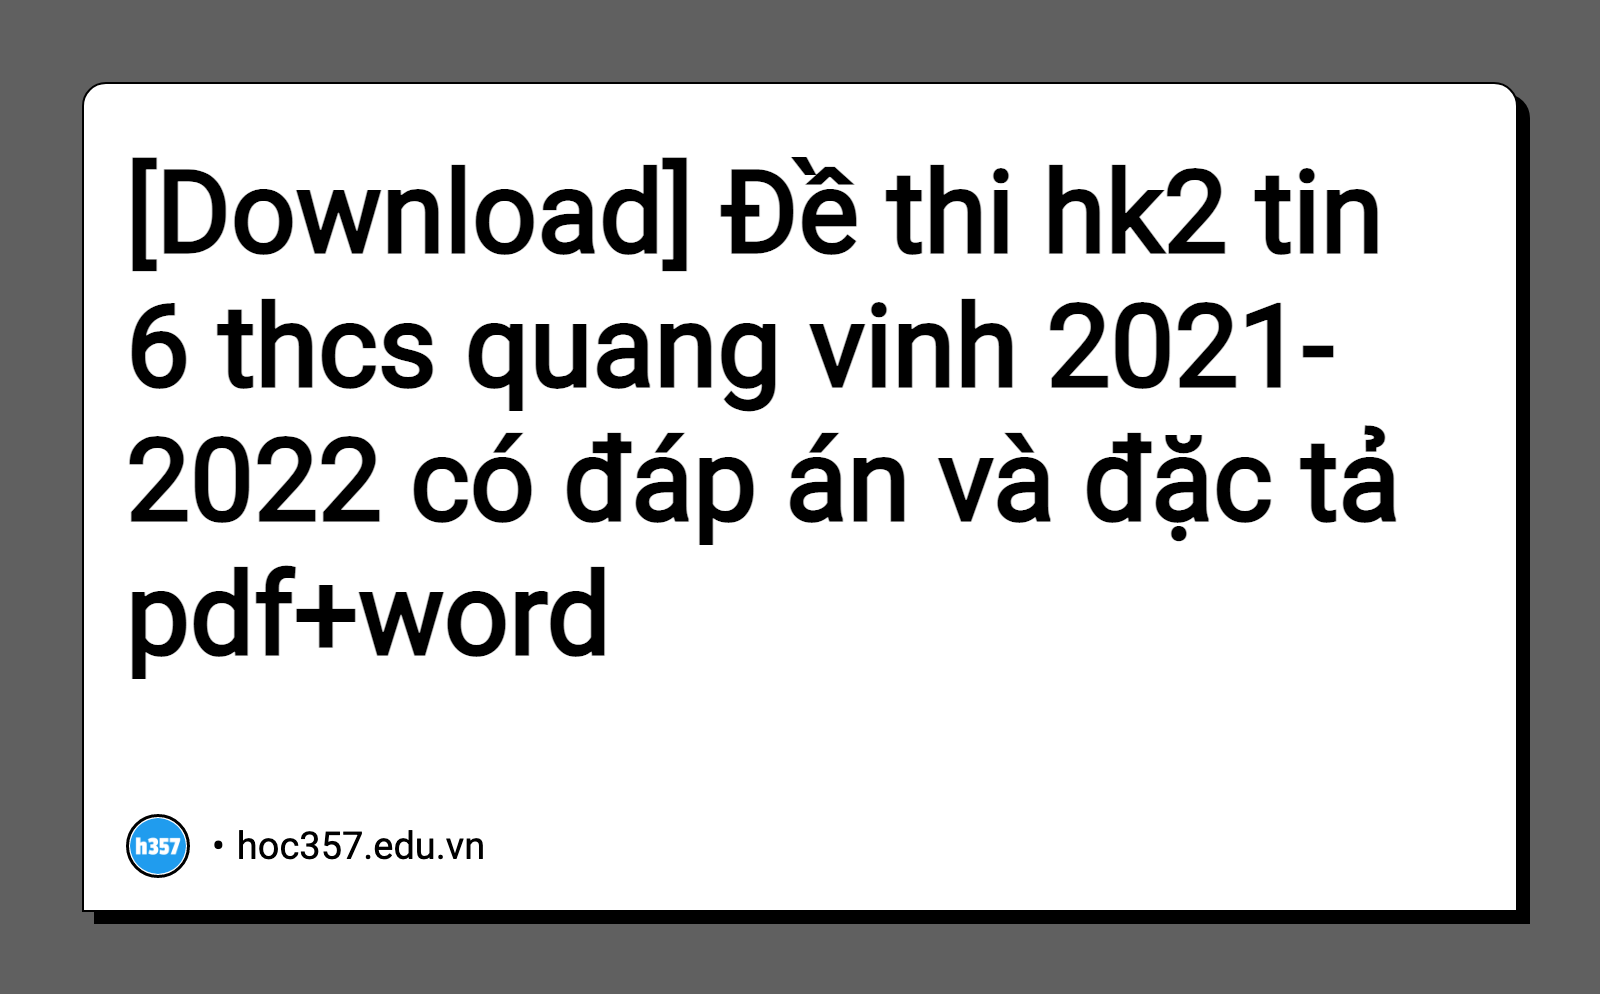 Hình minh họa Đề thi hk2 tin 6 thcs quang vinh 2021-2022 có đáp án và đặc tả